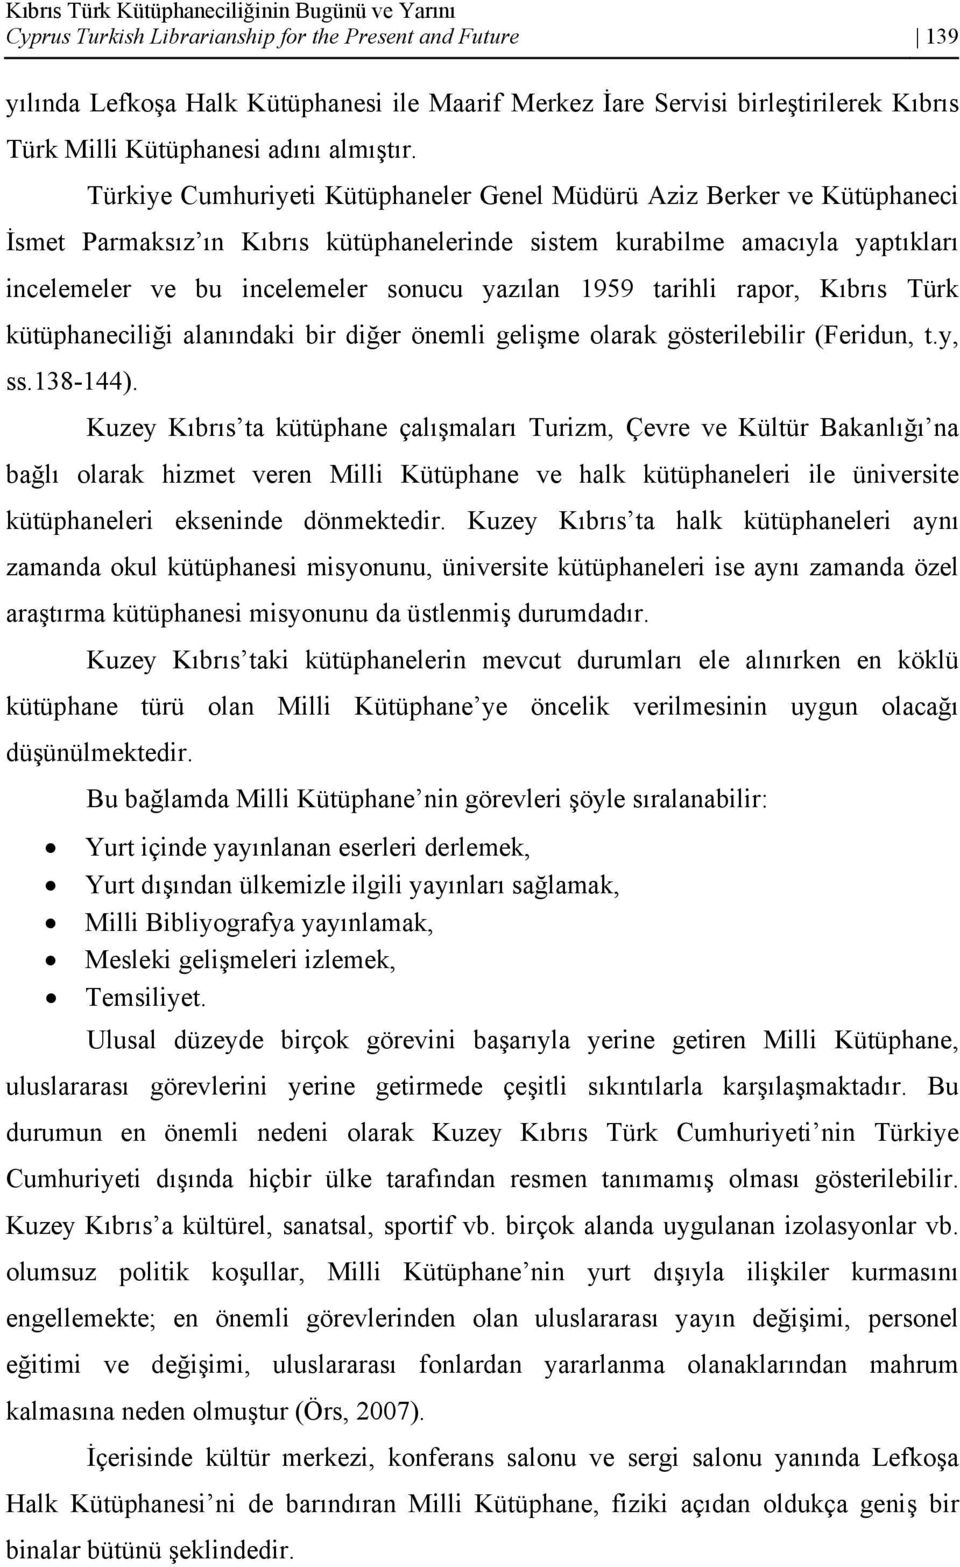 Türkiye Cumhuriyeti Kütüphaneler Genel Müdürü Aziz Berker ve Kütüphaneci İsmet Parmaksız ın Kıbrıs kütüphanelerinde sistem kurabilme amacıyla yaptıkları incelemeler ve bu incelemeler sonucu yazılan